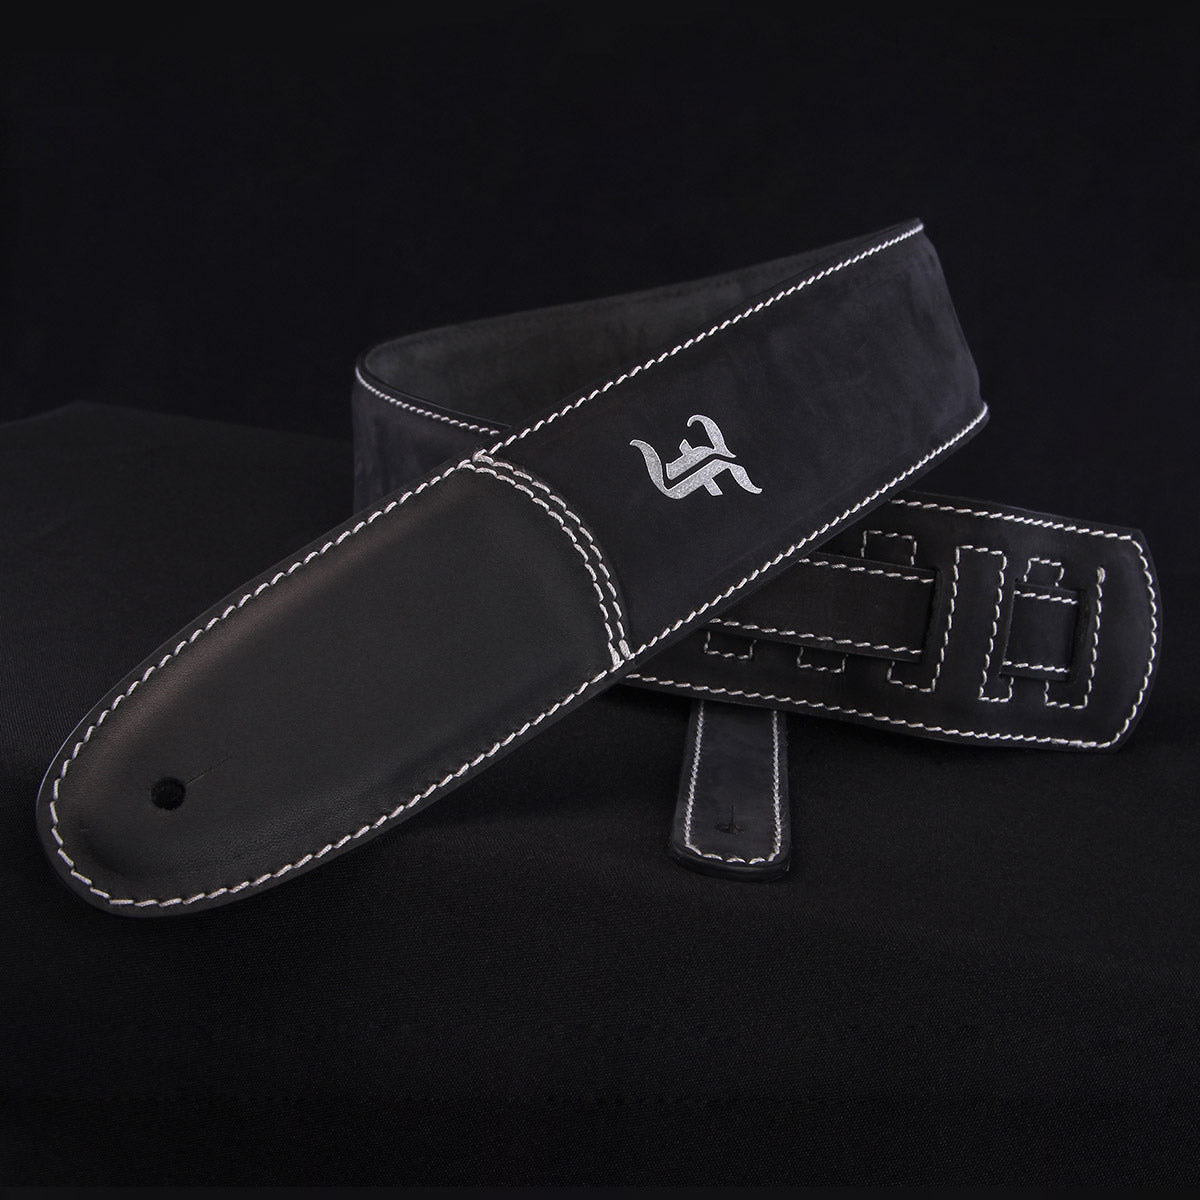 Premium leather strap